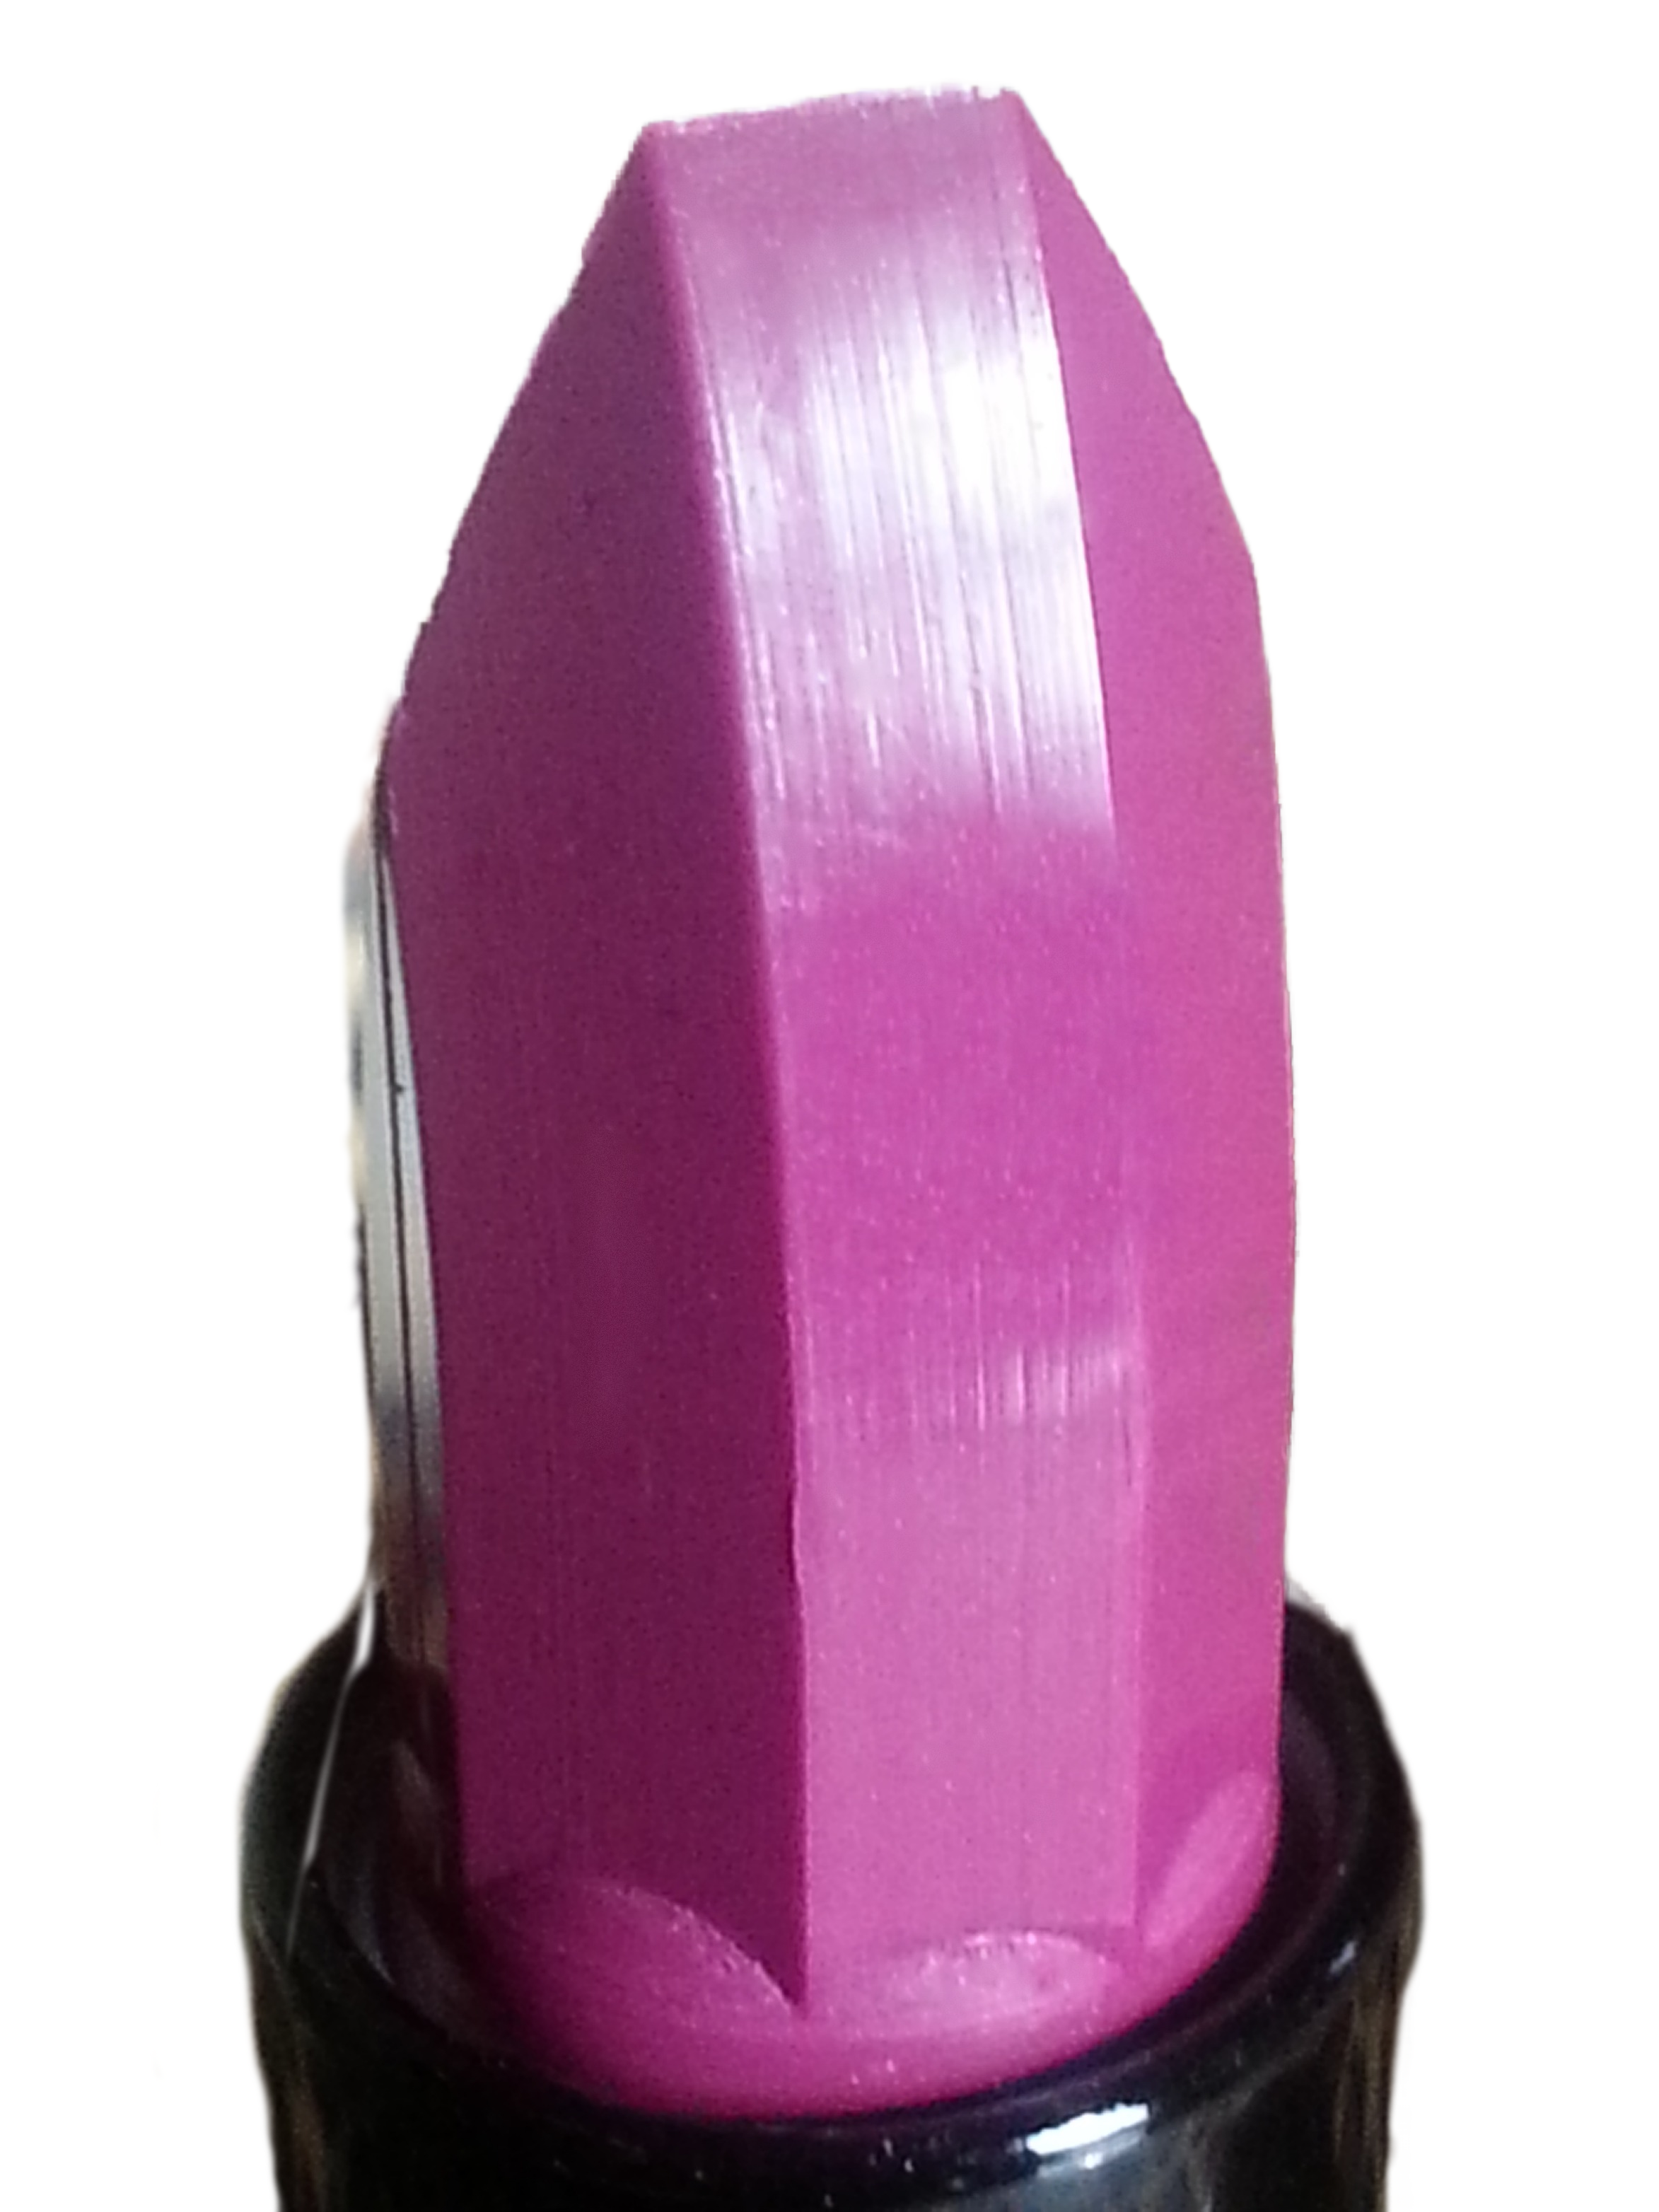 LTW Beehive Queen purple lipstick color swatch